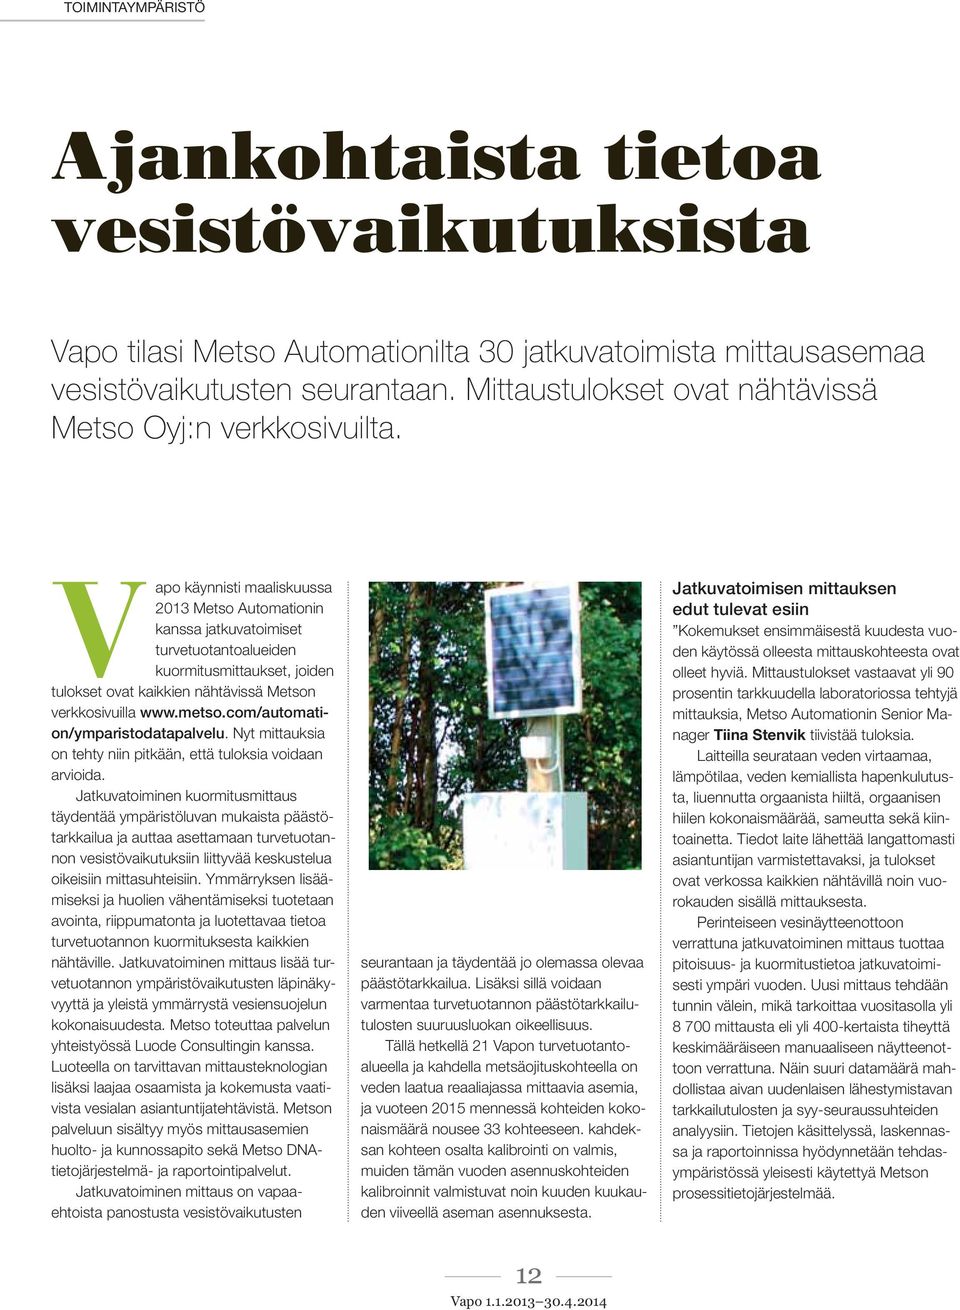 Vapo käynnisti maaliskuussa 2013 Metso Automationin kanssa jatkuvatoimiset turvetuotantoalueiden kuormitusmittaukset, joiden tulokset ovat kaikkien nähtävissä Metson verkkosivuilla www.metso.